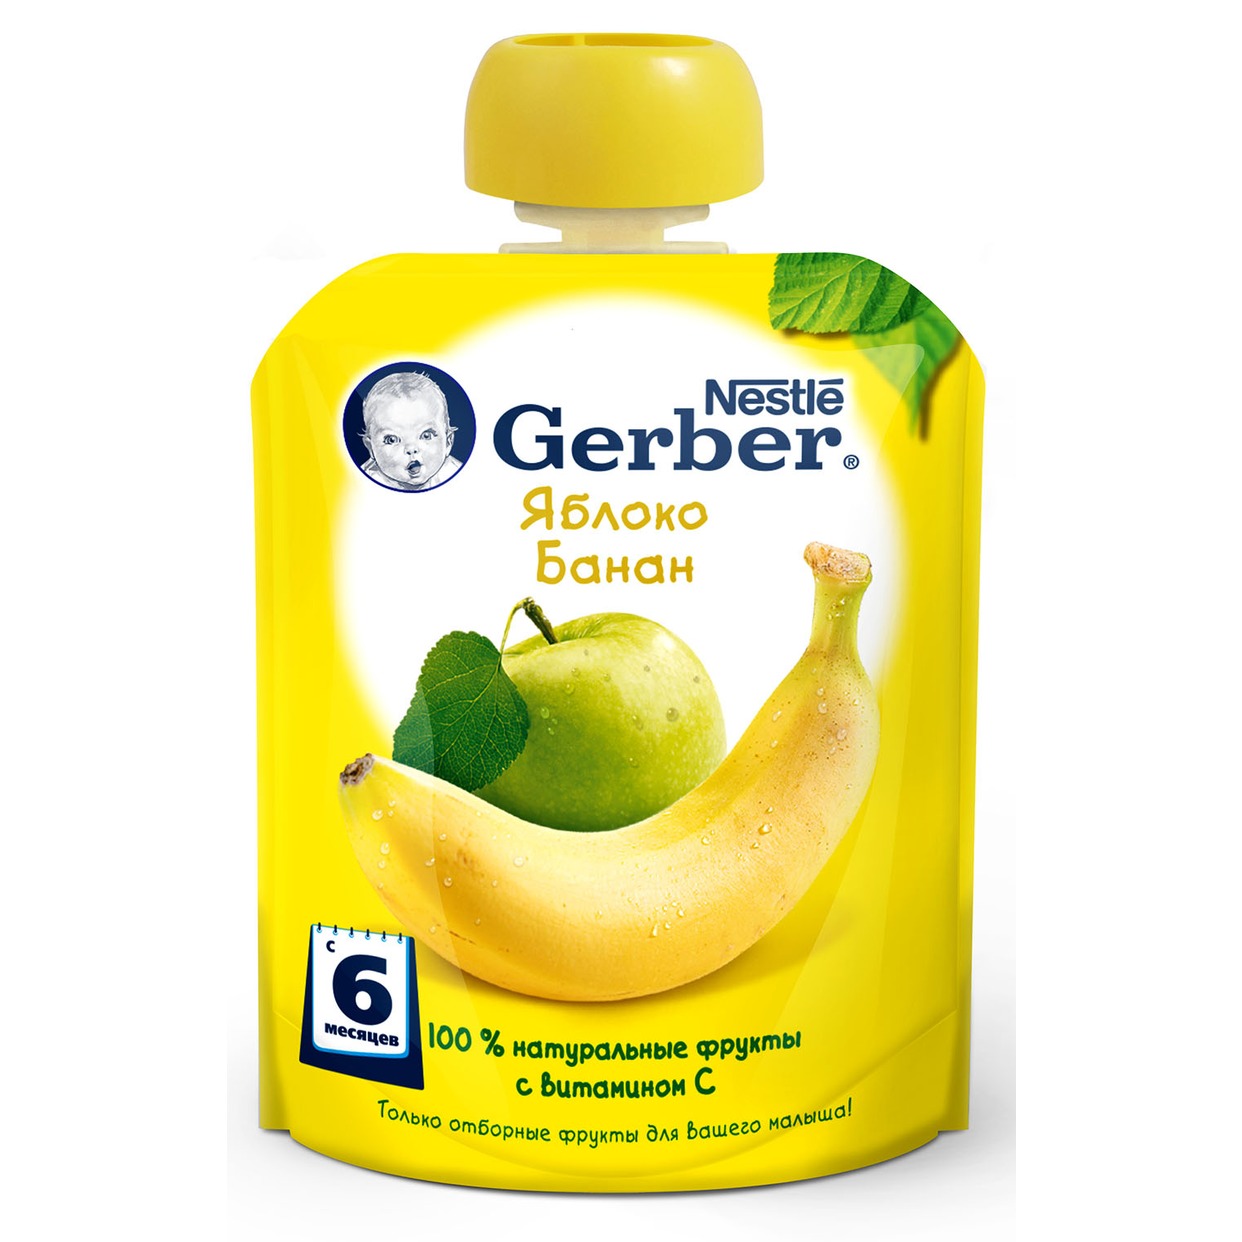 Пюре "Gerber" Яблоко-Банан фруктовое 90г по акции в Пятерочке